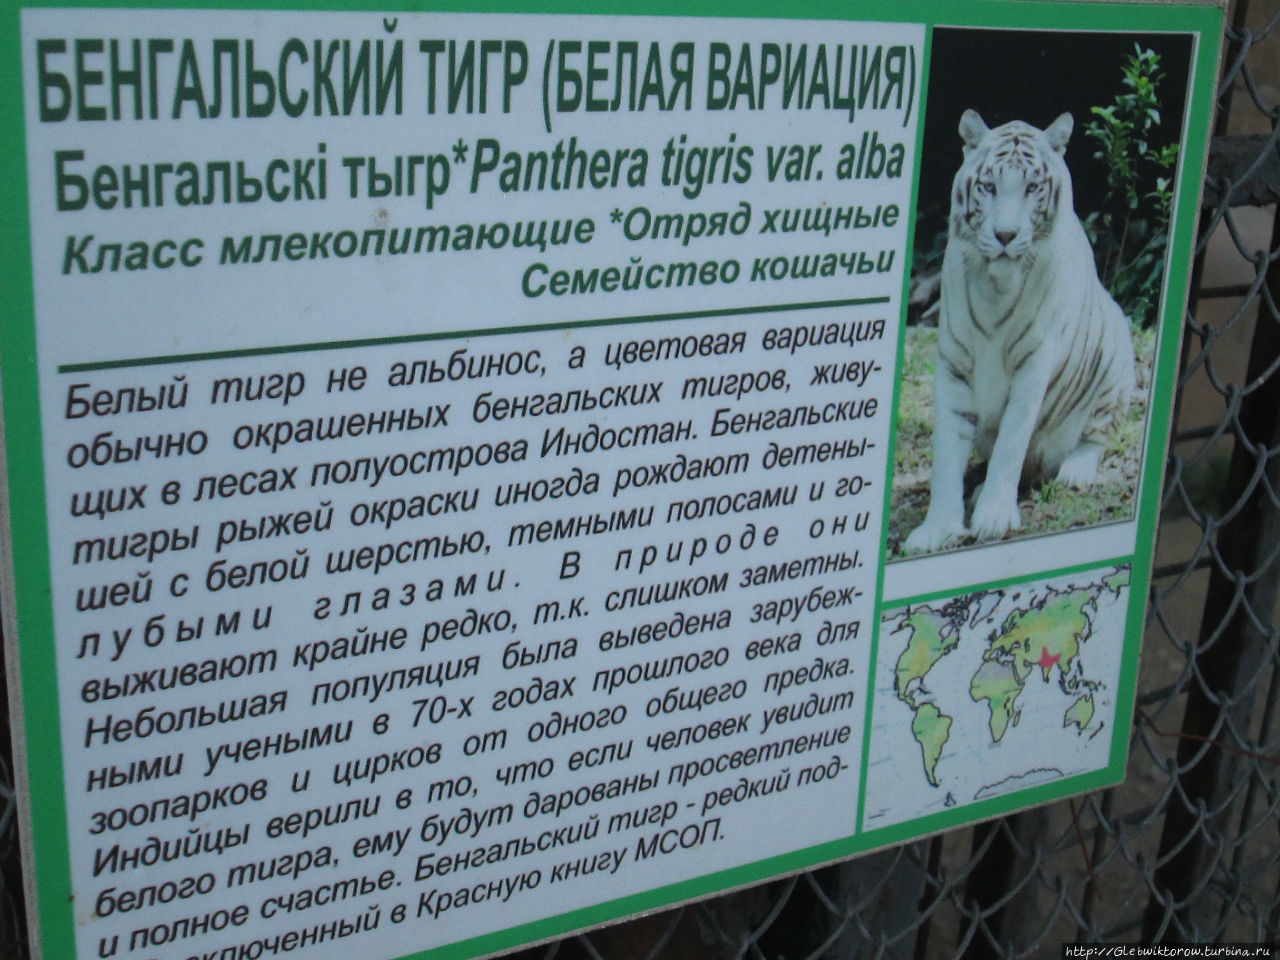 Прогулка по столичному зоопарку в майский день Минск, Беларусь